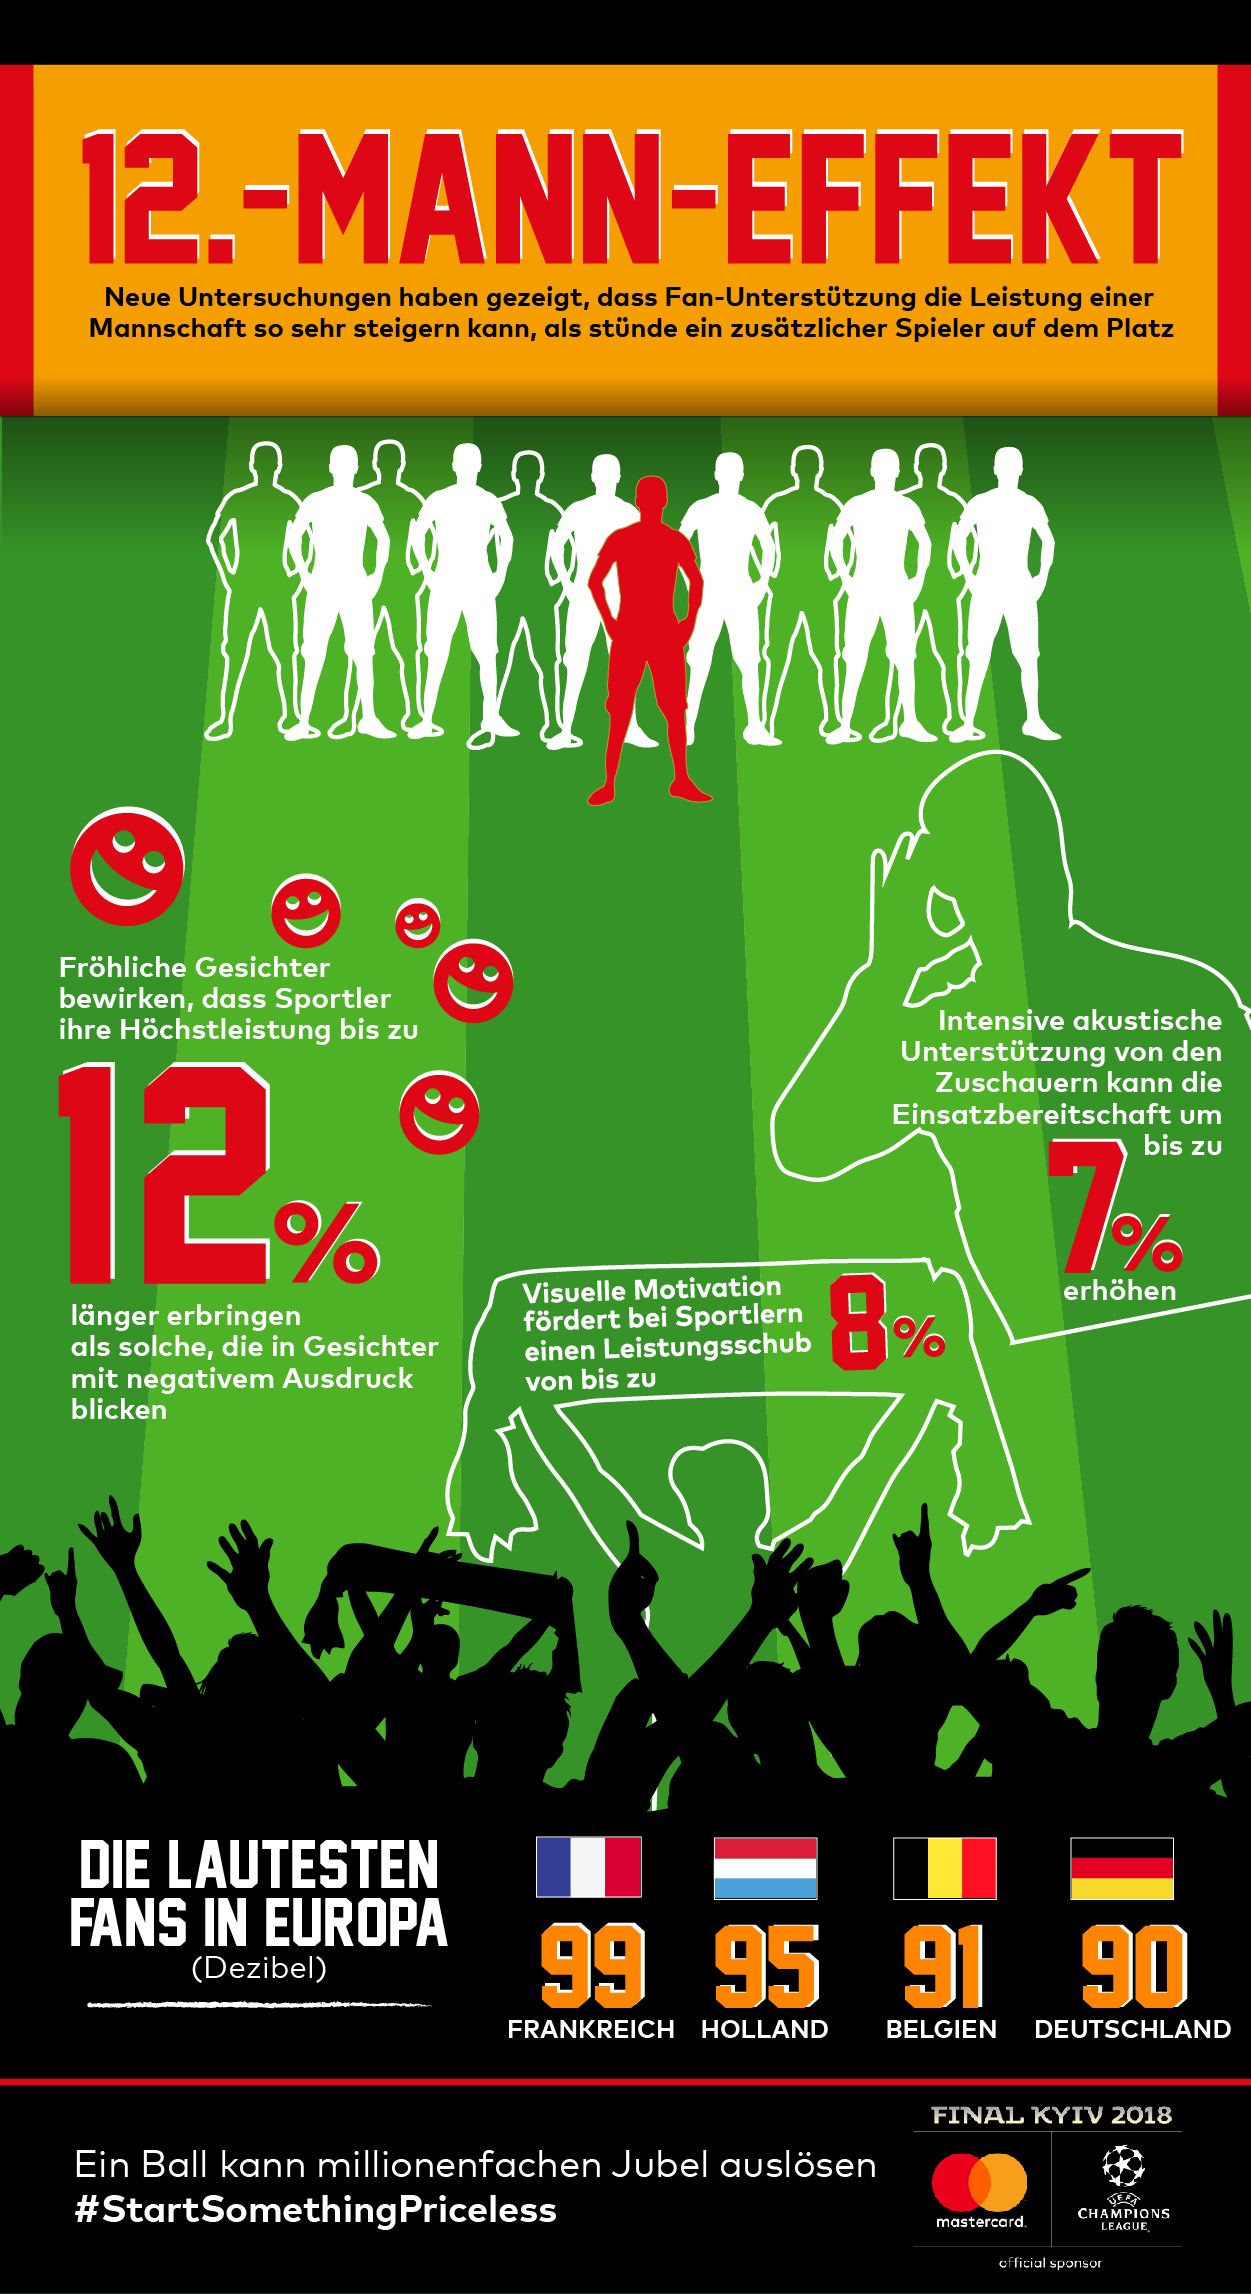 Mastercard_UCL_Infographic_12_Manneffekt